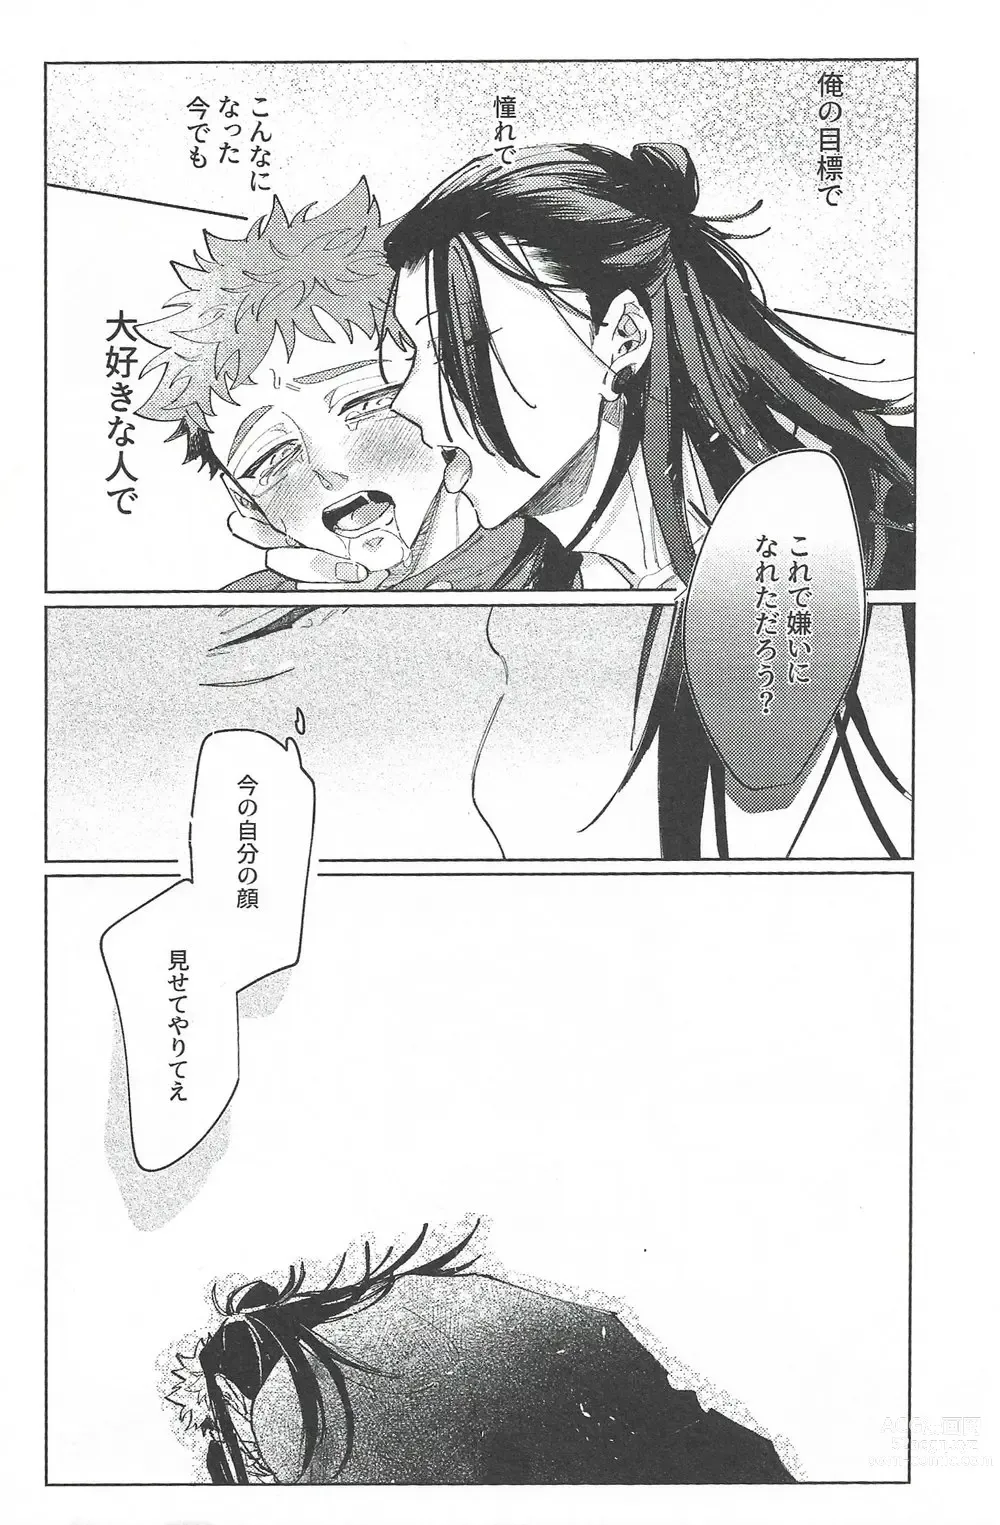 Page 66 of doujinshi Rakuen no Niwa